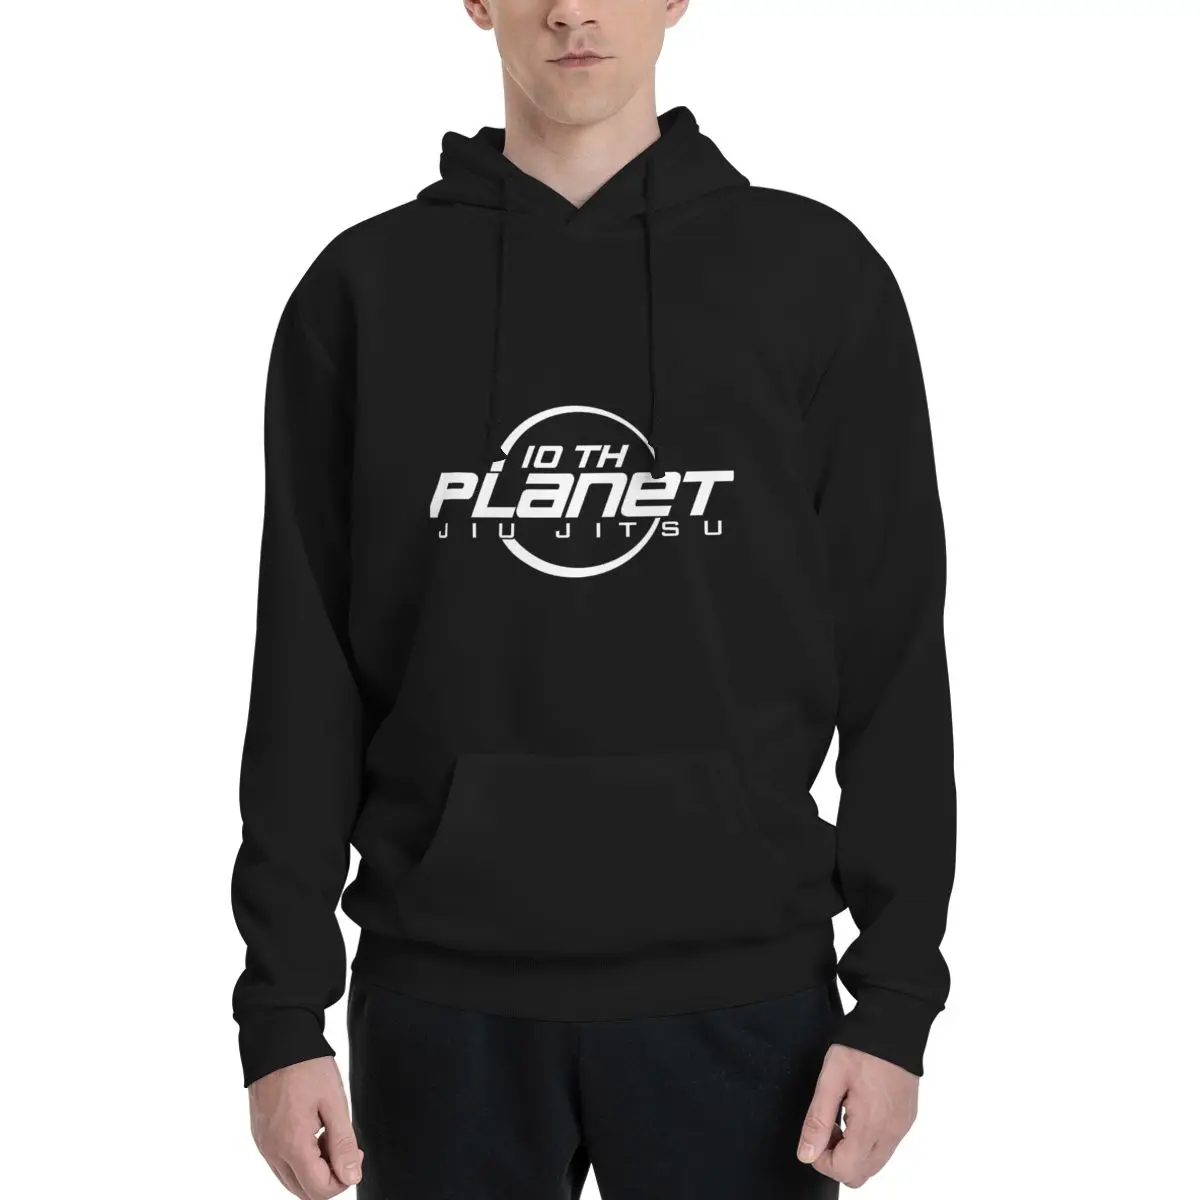 

10th Planet Jiu-Jitsu Polyester Hoodie Men's Women's Sweater Size XXS-3XL